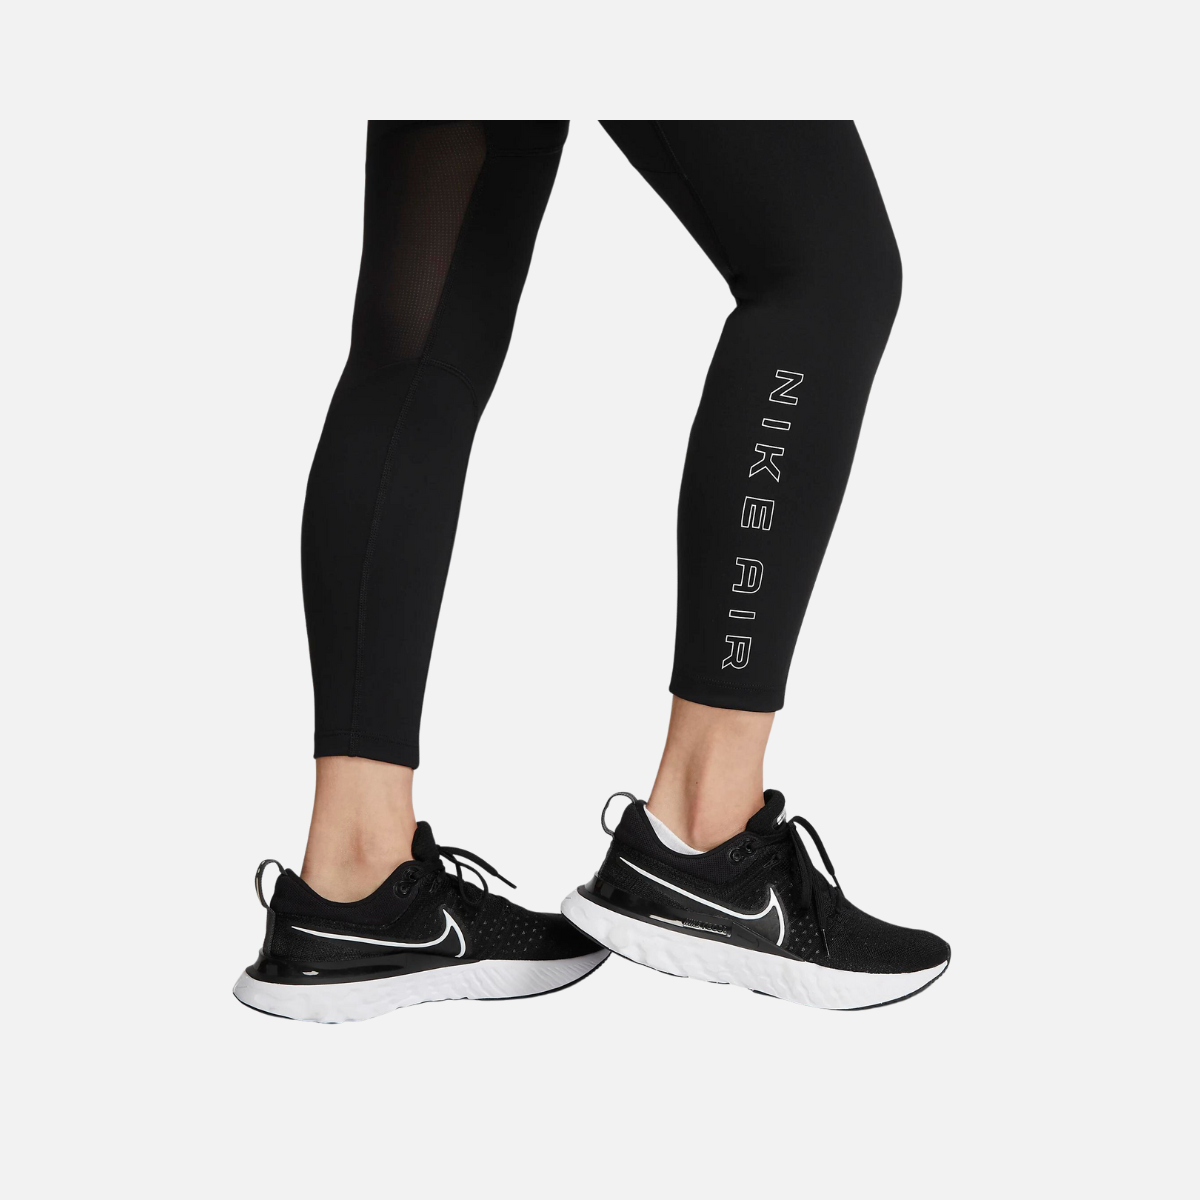 NWT $70 Nike Air Dri-FIT Women's Fold-Over Waist 7/8 Leggings